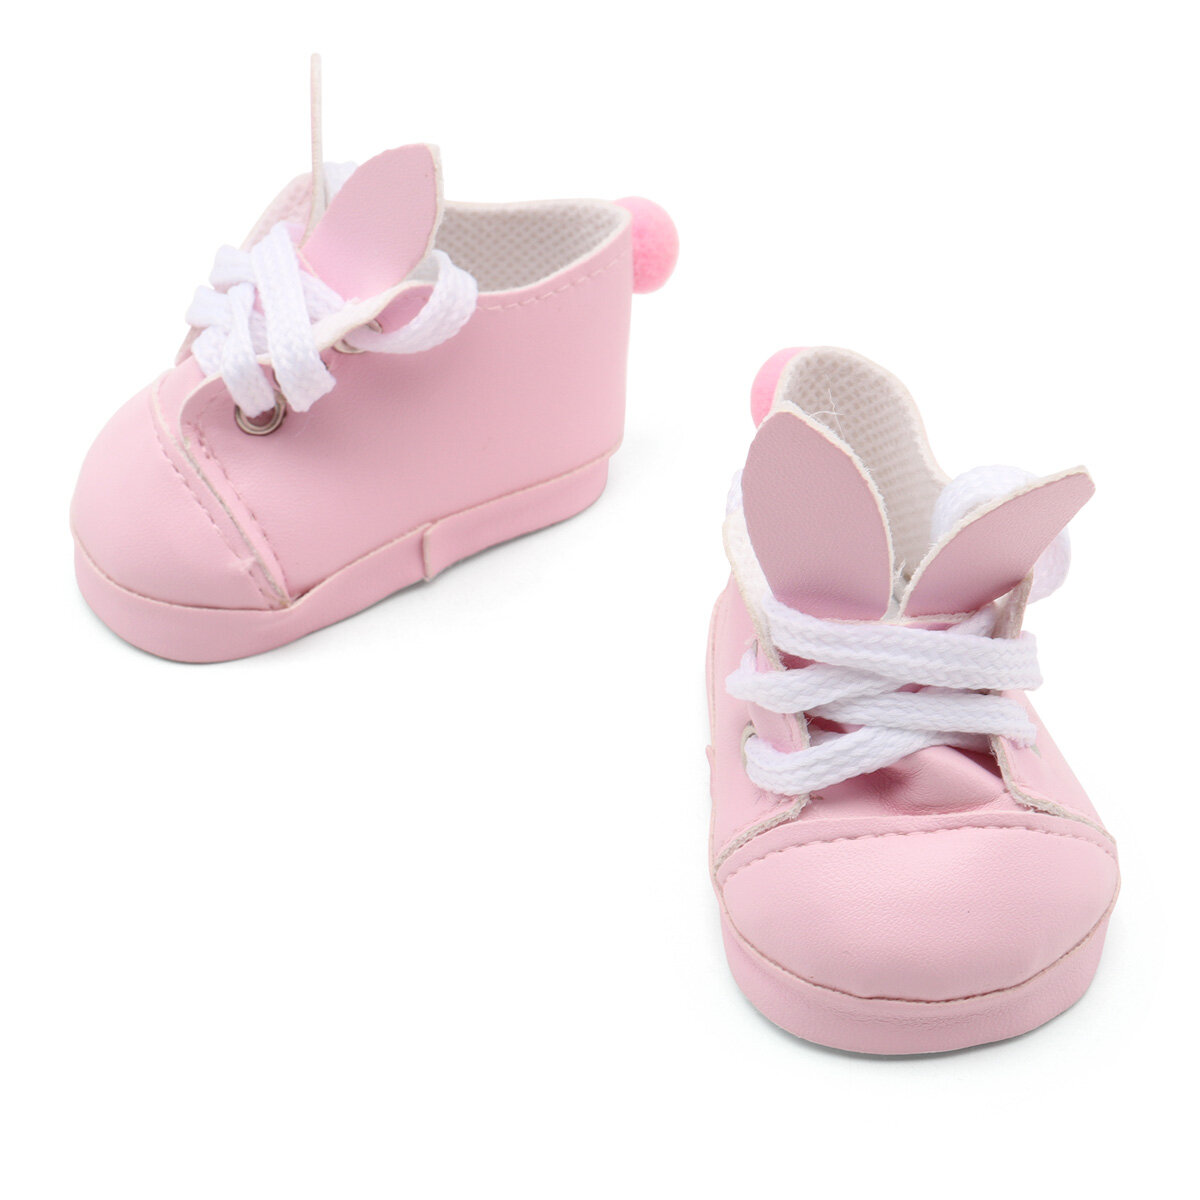 SH-0031 Ботиночки для кукол 7*3,7*3,5 см,1 пара, Astra&Craft (розовый)